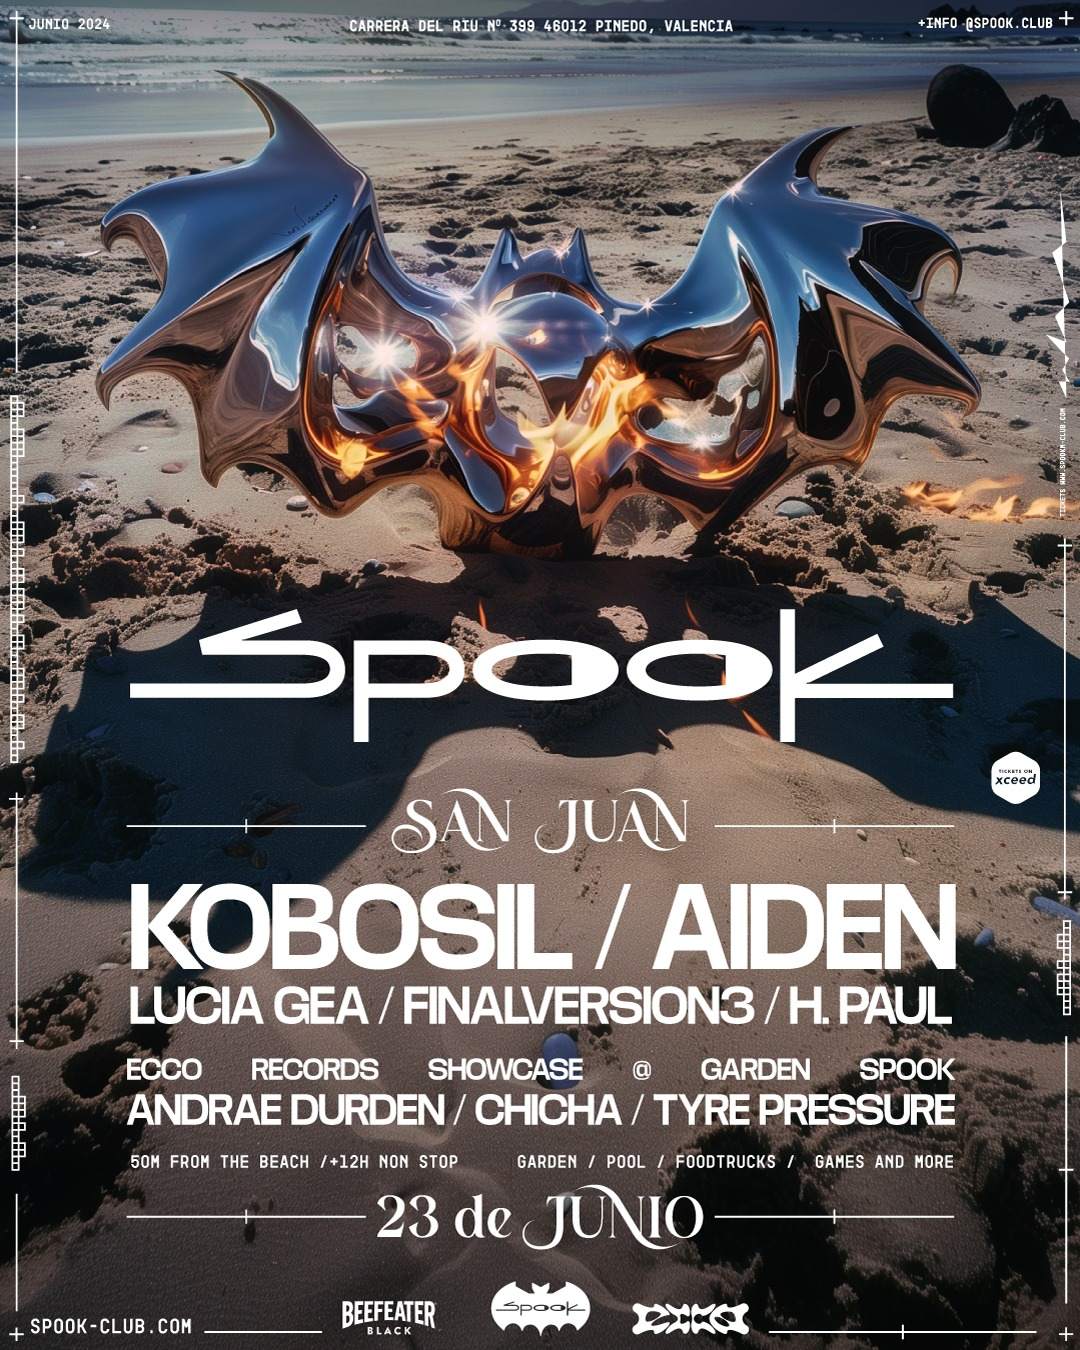 SAN JUAN: Kobosil & Aiden + Ecco Records showcase - Página frontal